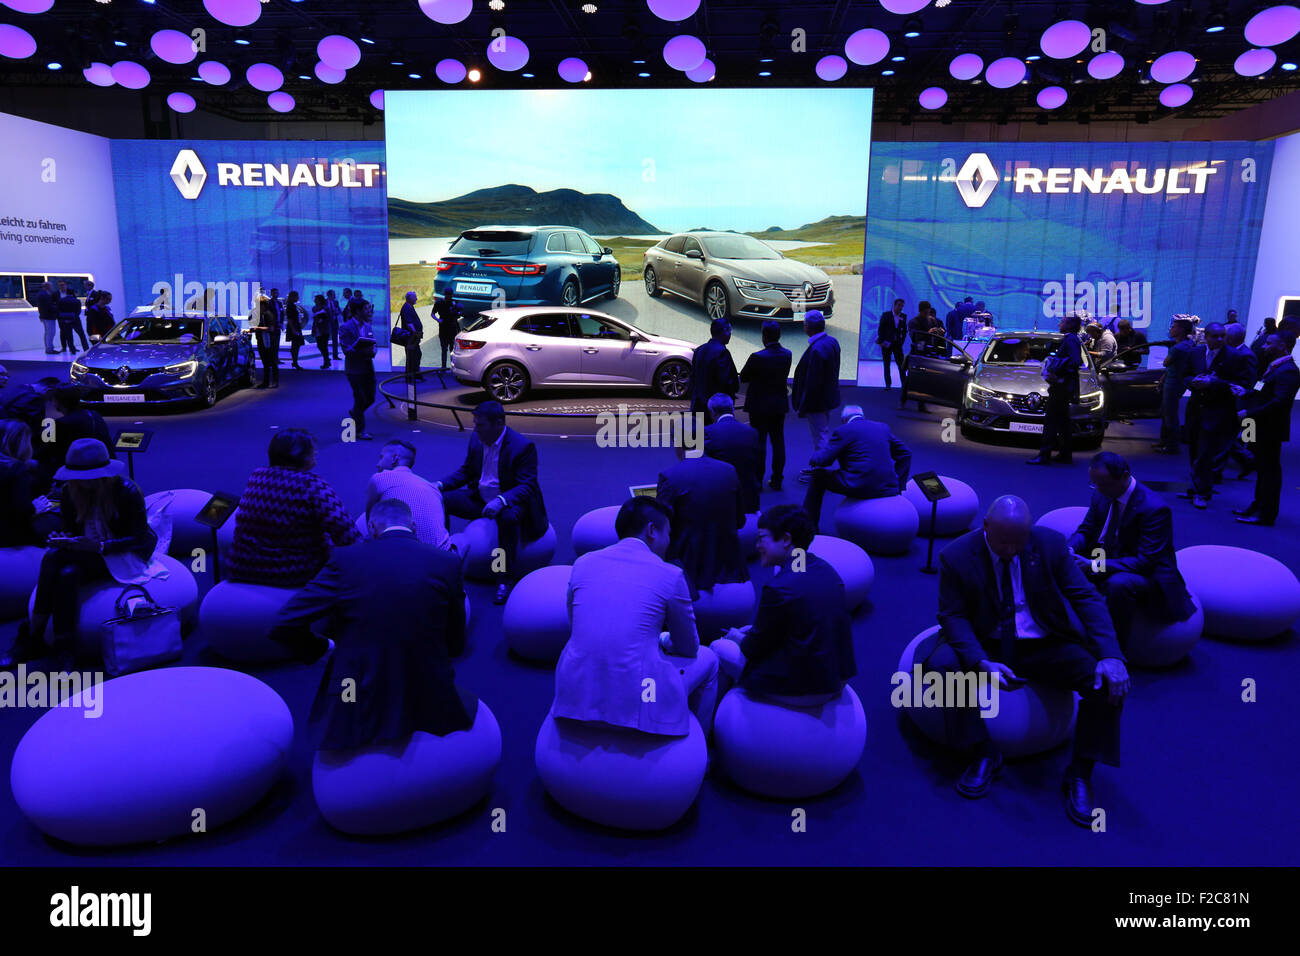 Francfort/M, 16.09.2015 - stand RENAULT à la 66e International Motor Show (IAA 2015 Internationale Automobil Ausstellung, IAA) à Francfort/Main, Allemagne Banque D'Images